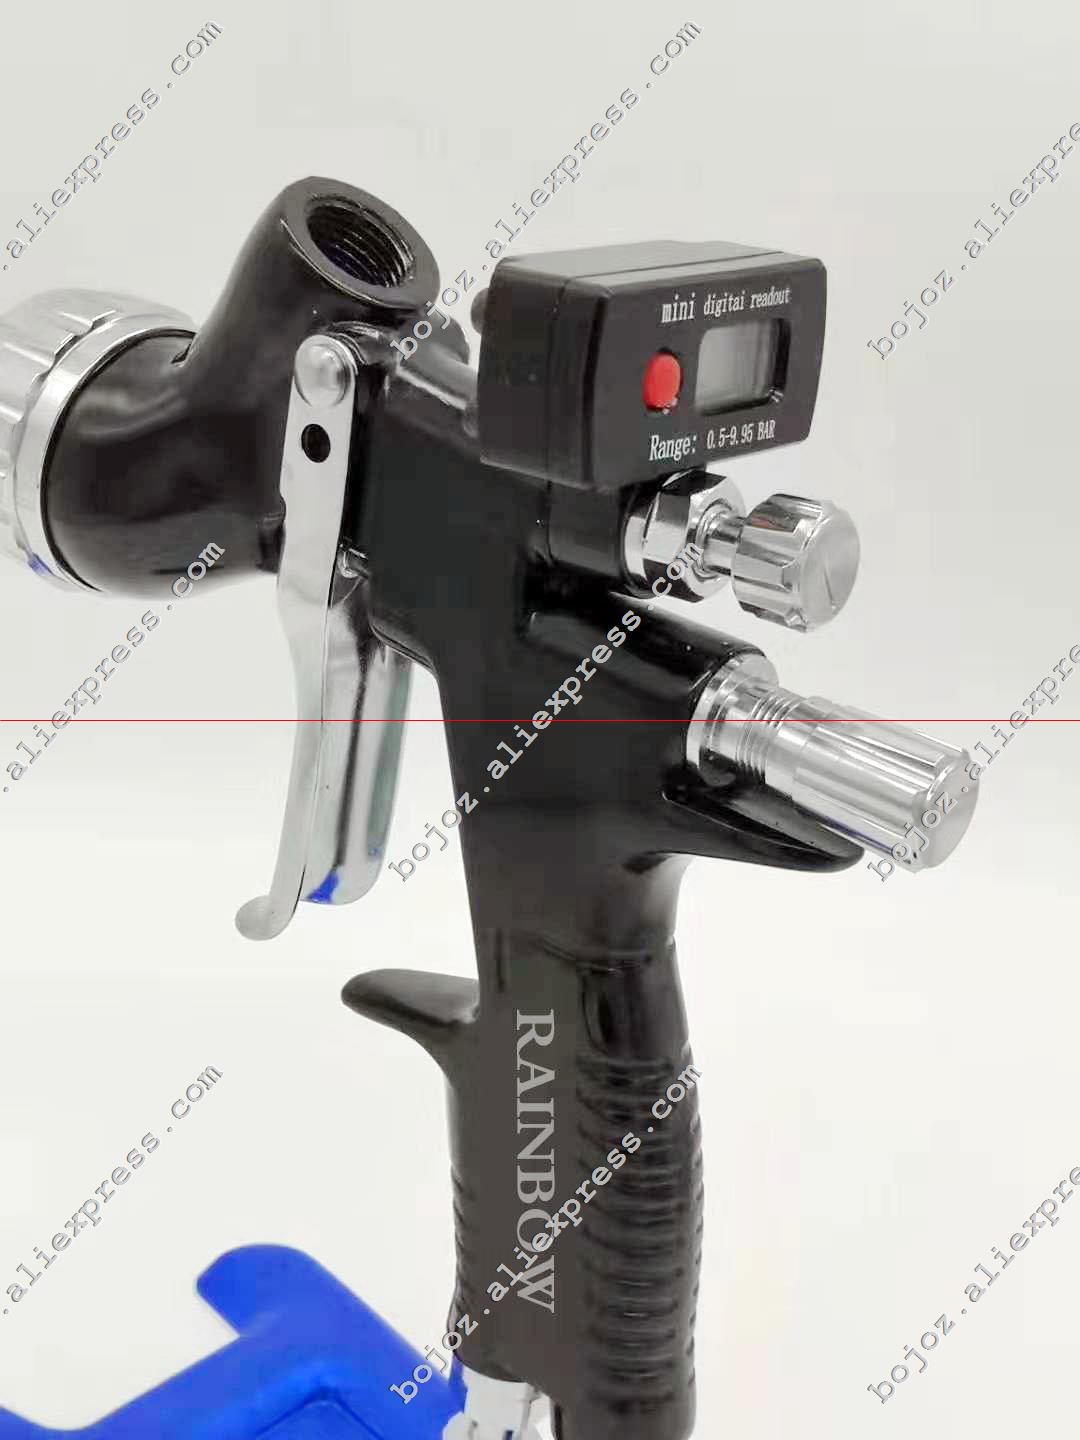 Air pneumatic gun GTI pro lite painting gun TE20/T110 1.3 nozzle air spray gun water based with Mini digital Air regulator Gauge